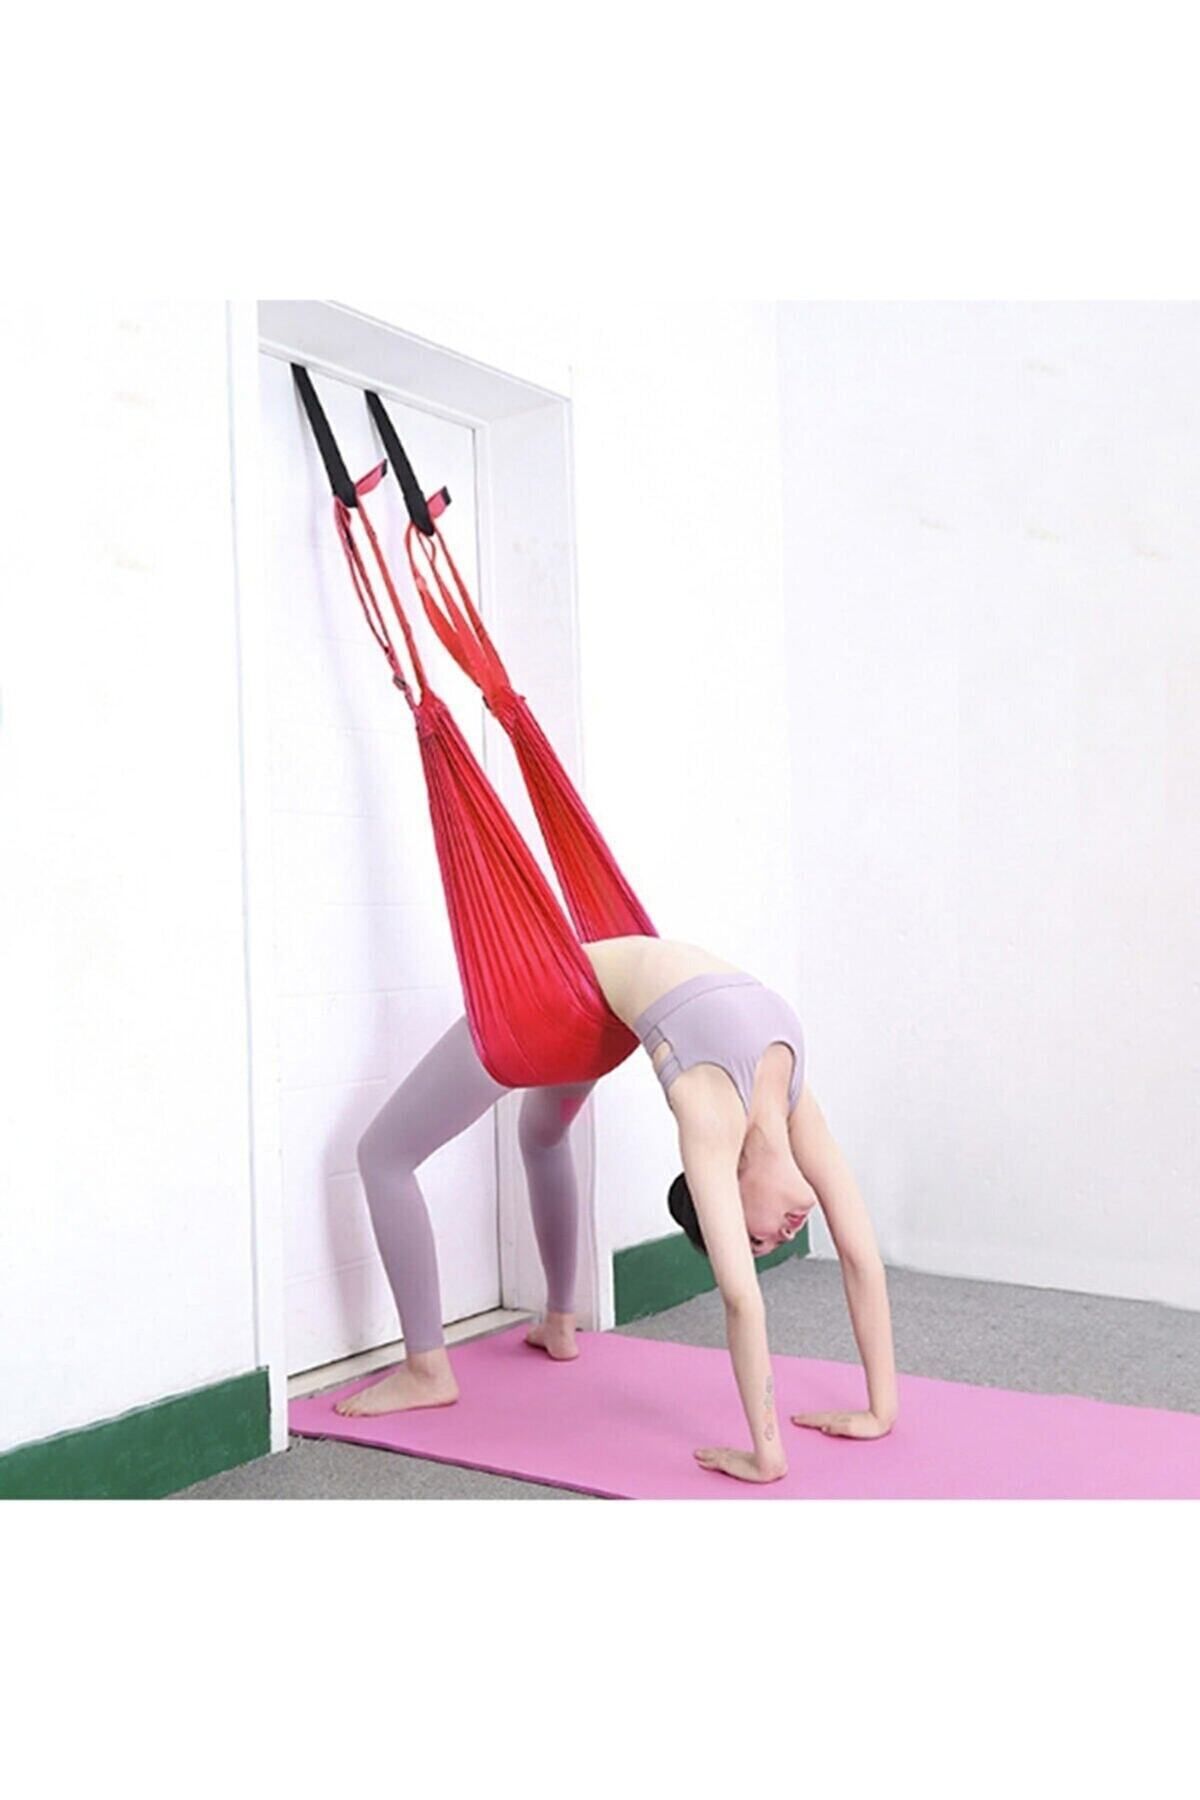 teknotrust Kırmızı Yoga Plus Hamağı Pilates Fitness Askılı Yoga Denge Spor Aleti